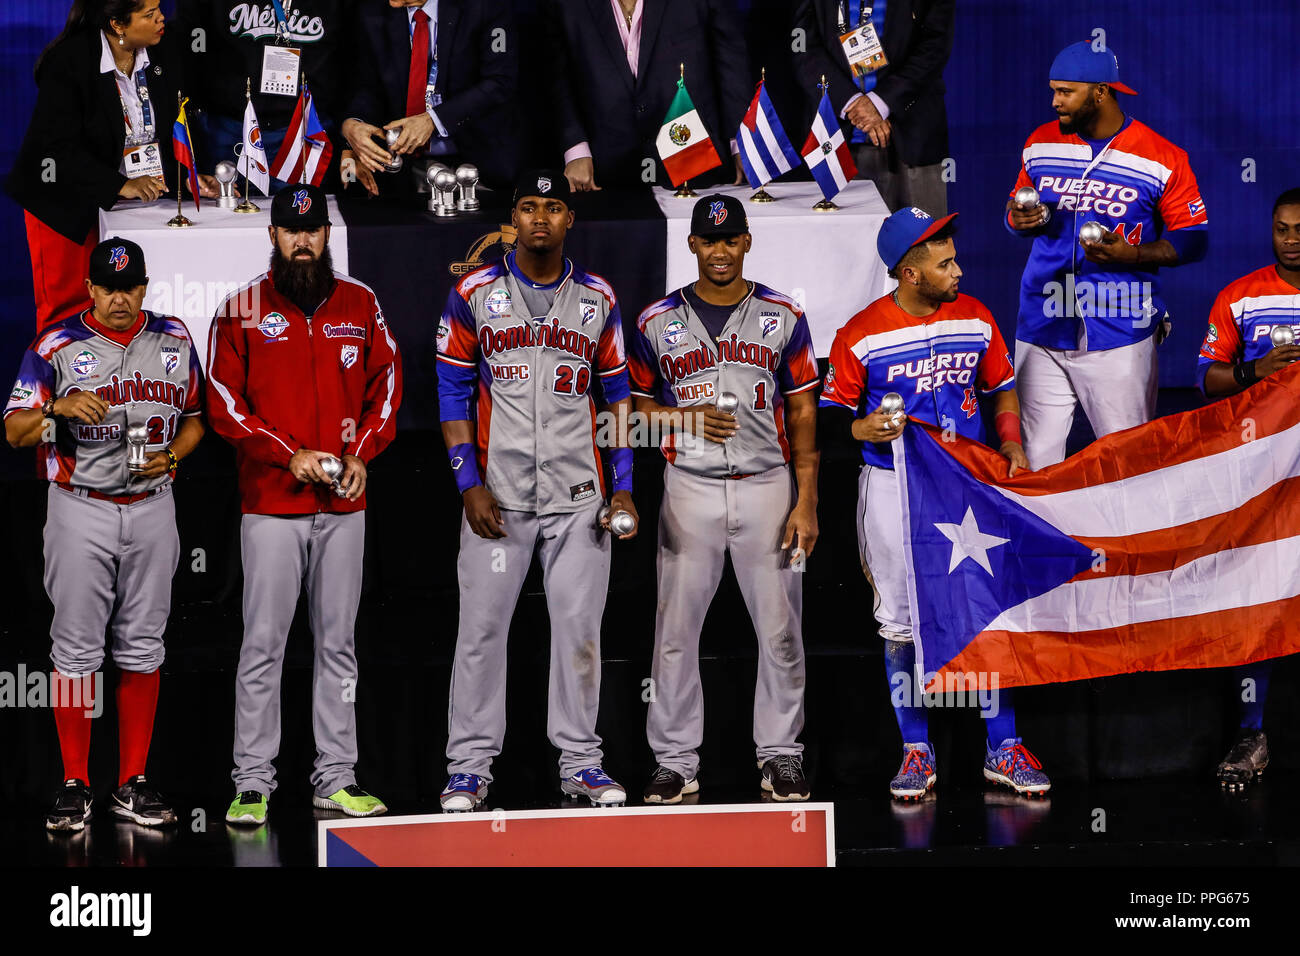 Anthony Garcia jugador Mas valioso de los Criollos de Caguas Puerto Rico equipo bi campeón de Serie del Caribe, Al Dar 9 Carreras por 4a Águila Stockfoto